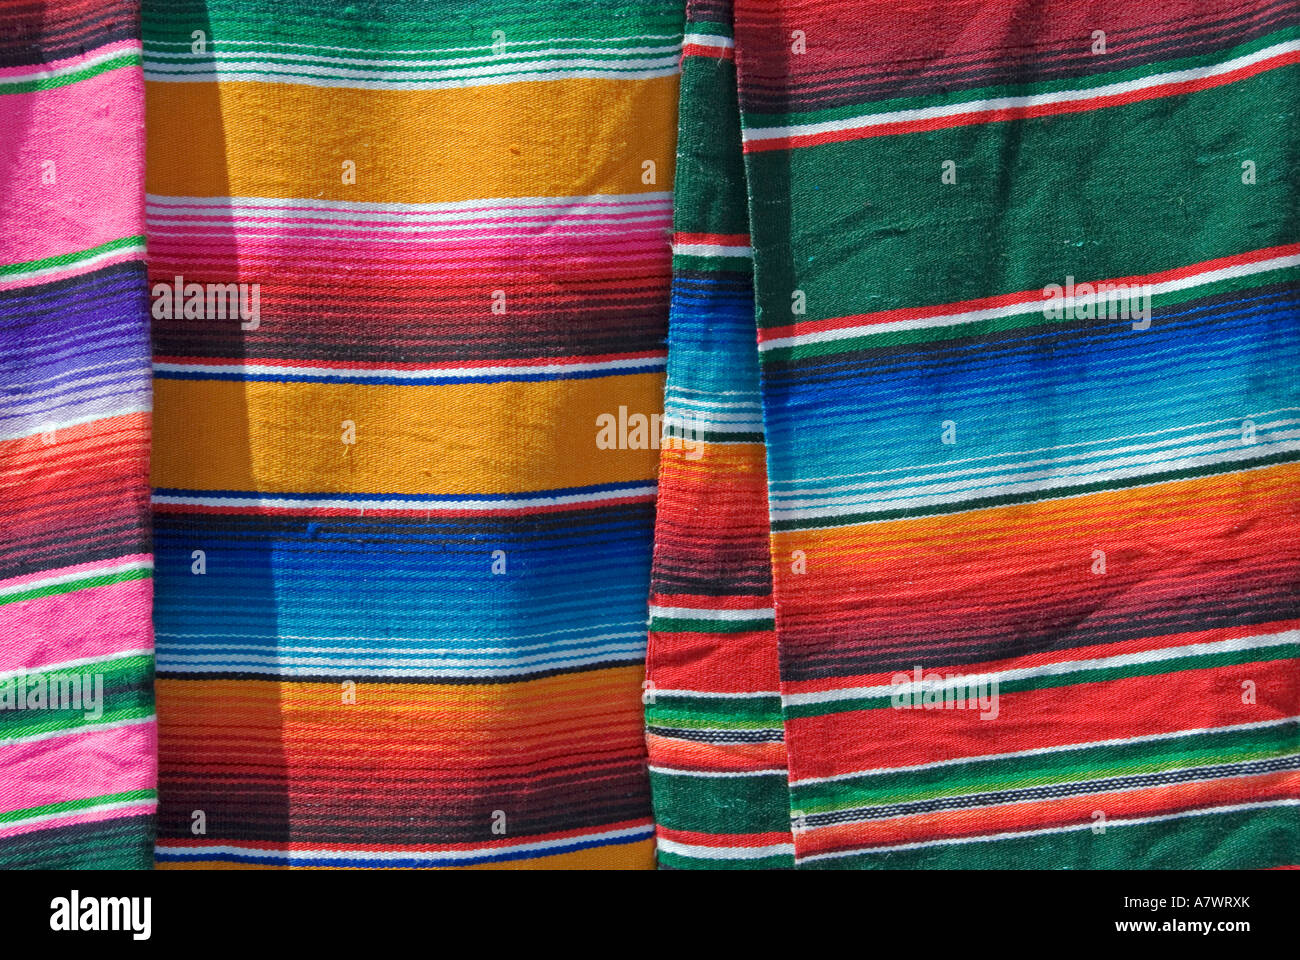 Indian village San Juan Chamula, tissus colorés Chiapas Mexique Banque D'Images